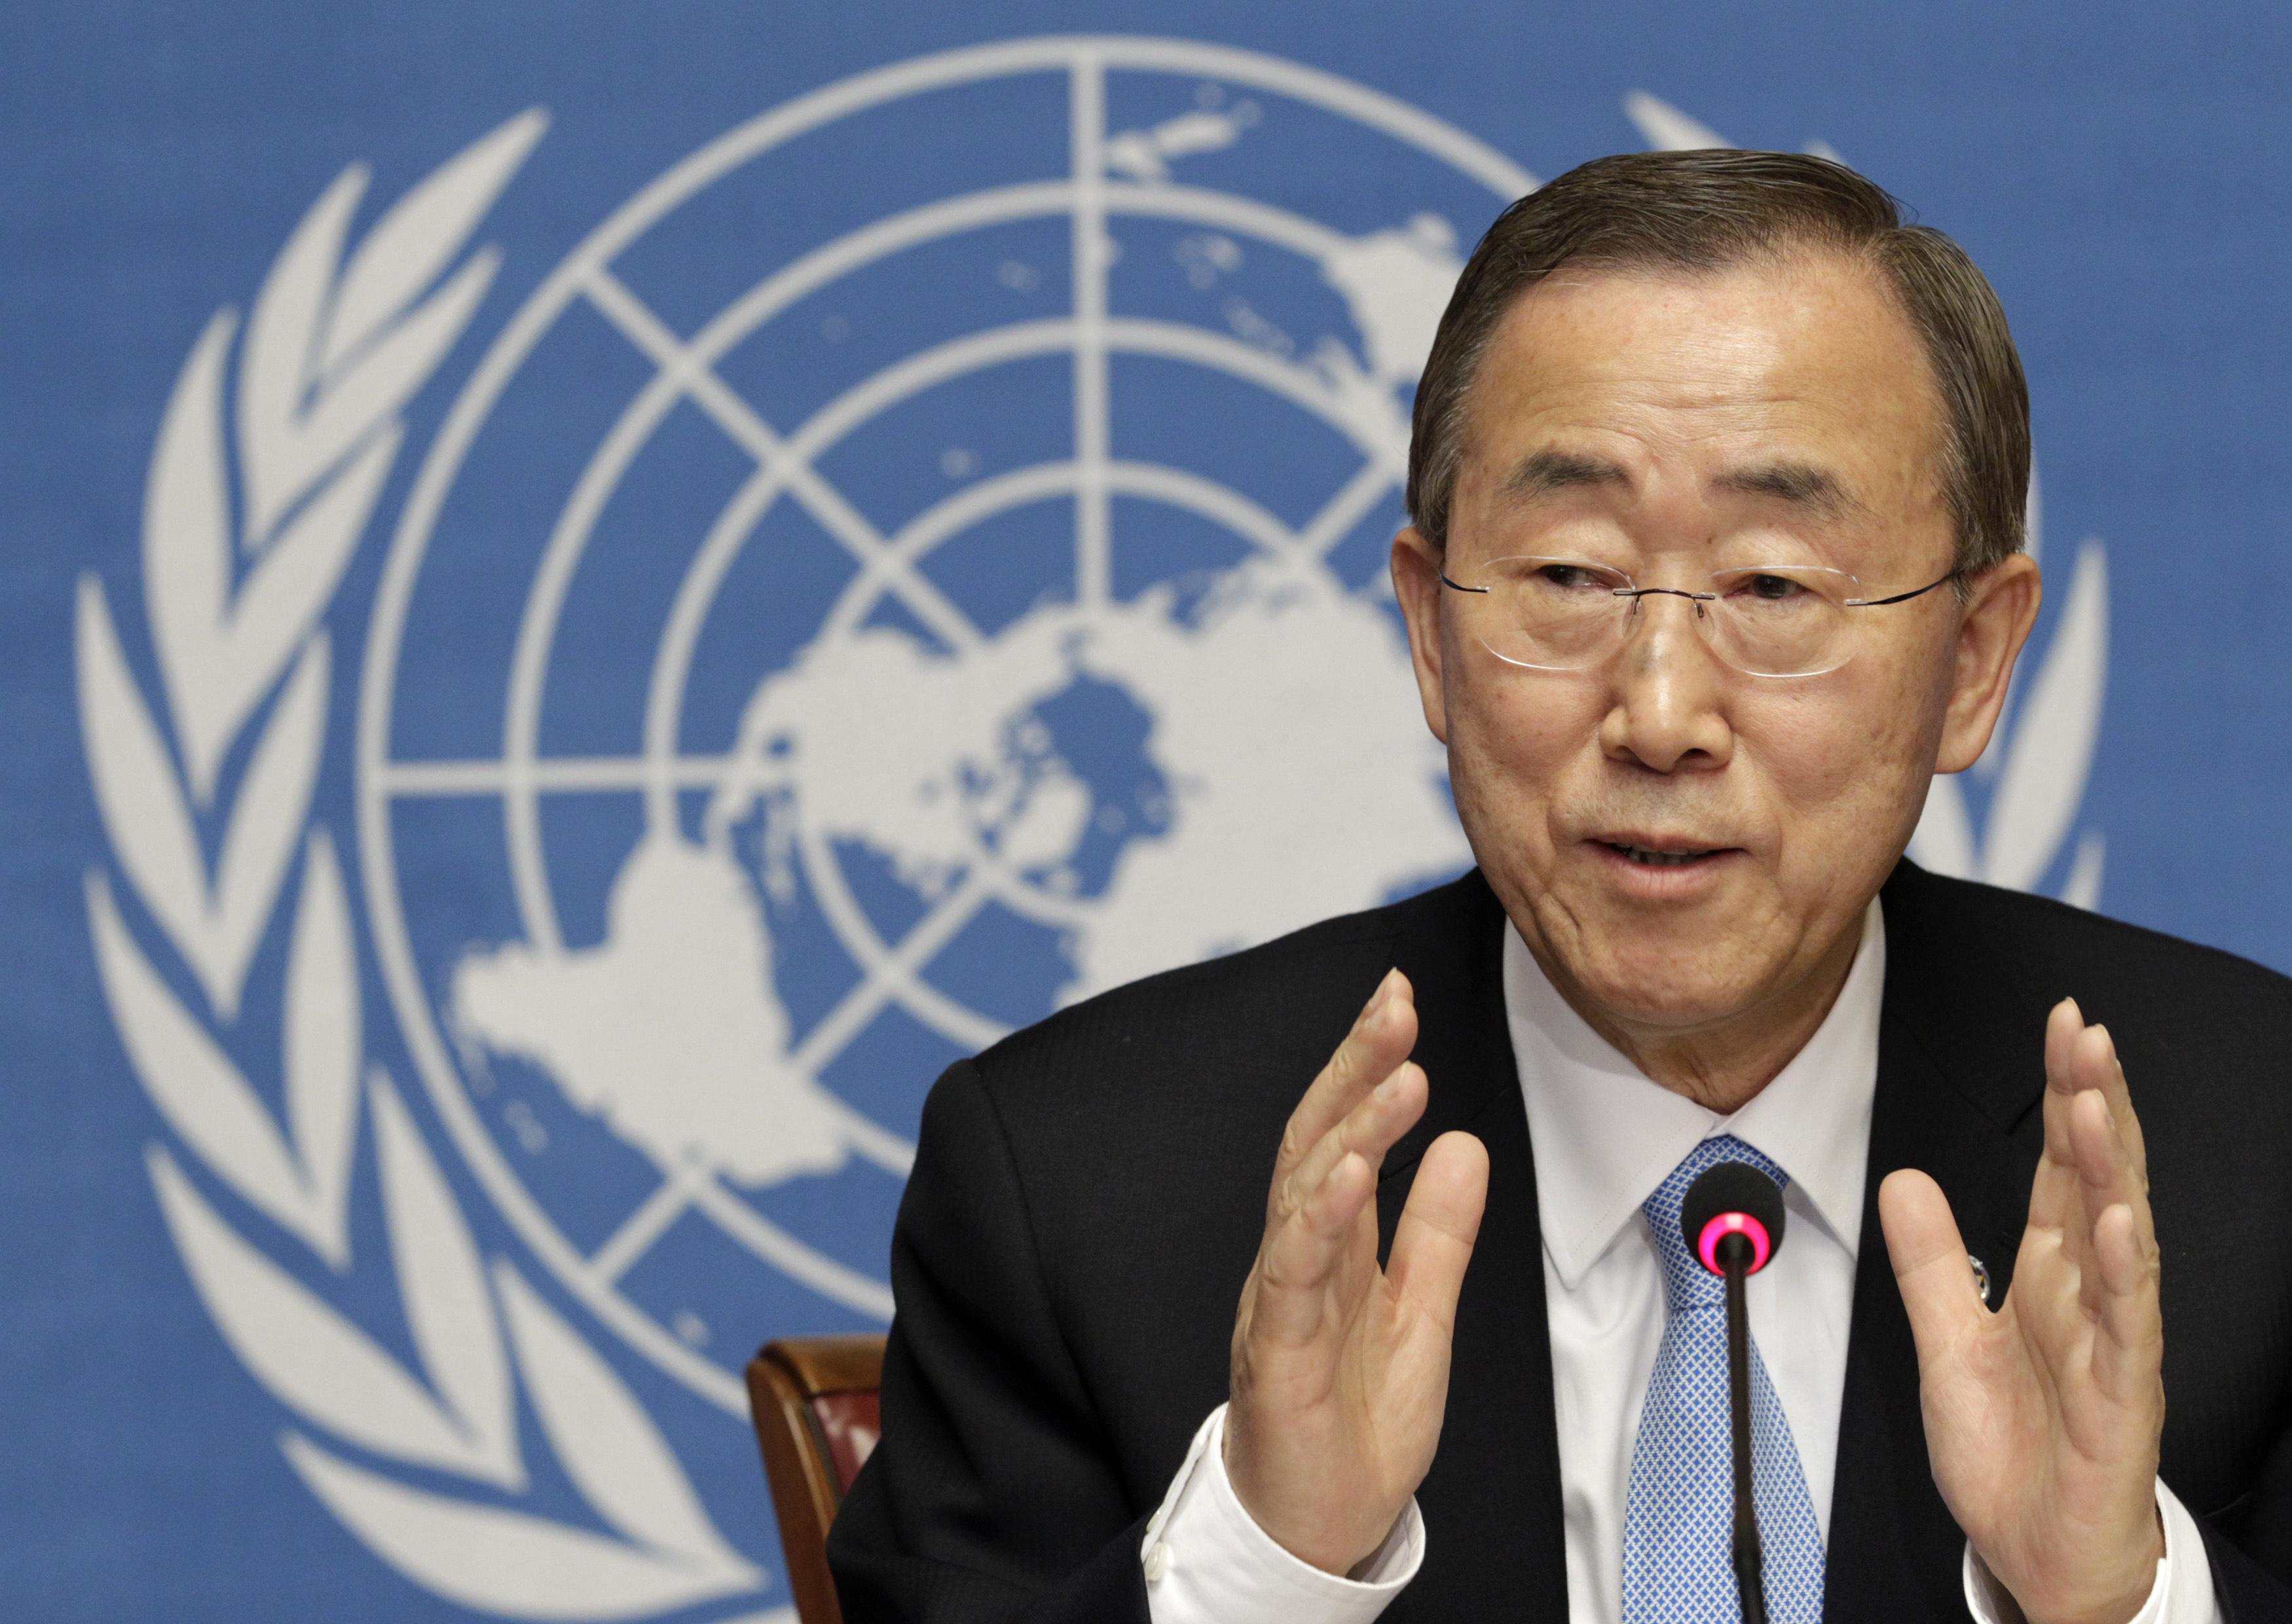 Оон 2014. Пан ги Мун СССР Украина ООН. Генеральный секретарь ООН. Ban ki-Moon секретарь ООН. Пан ги Мун Украина 2014.